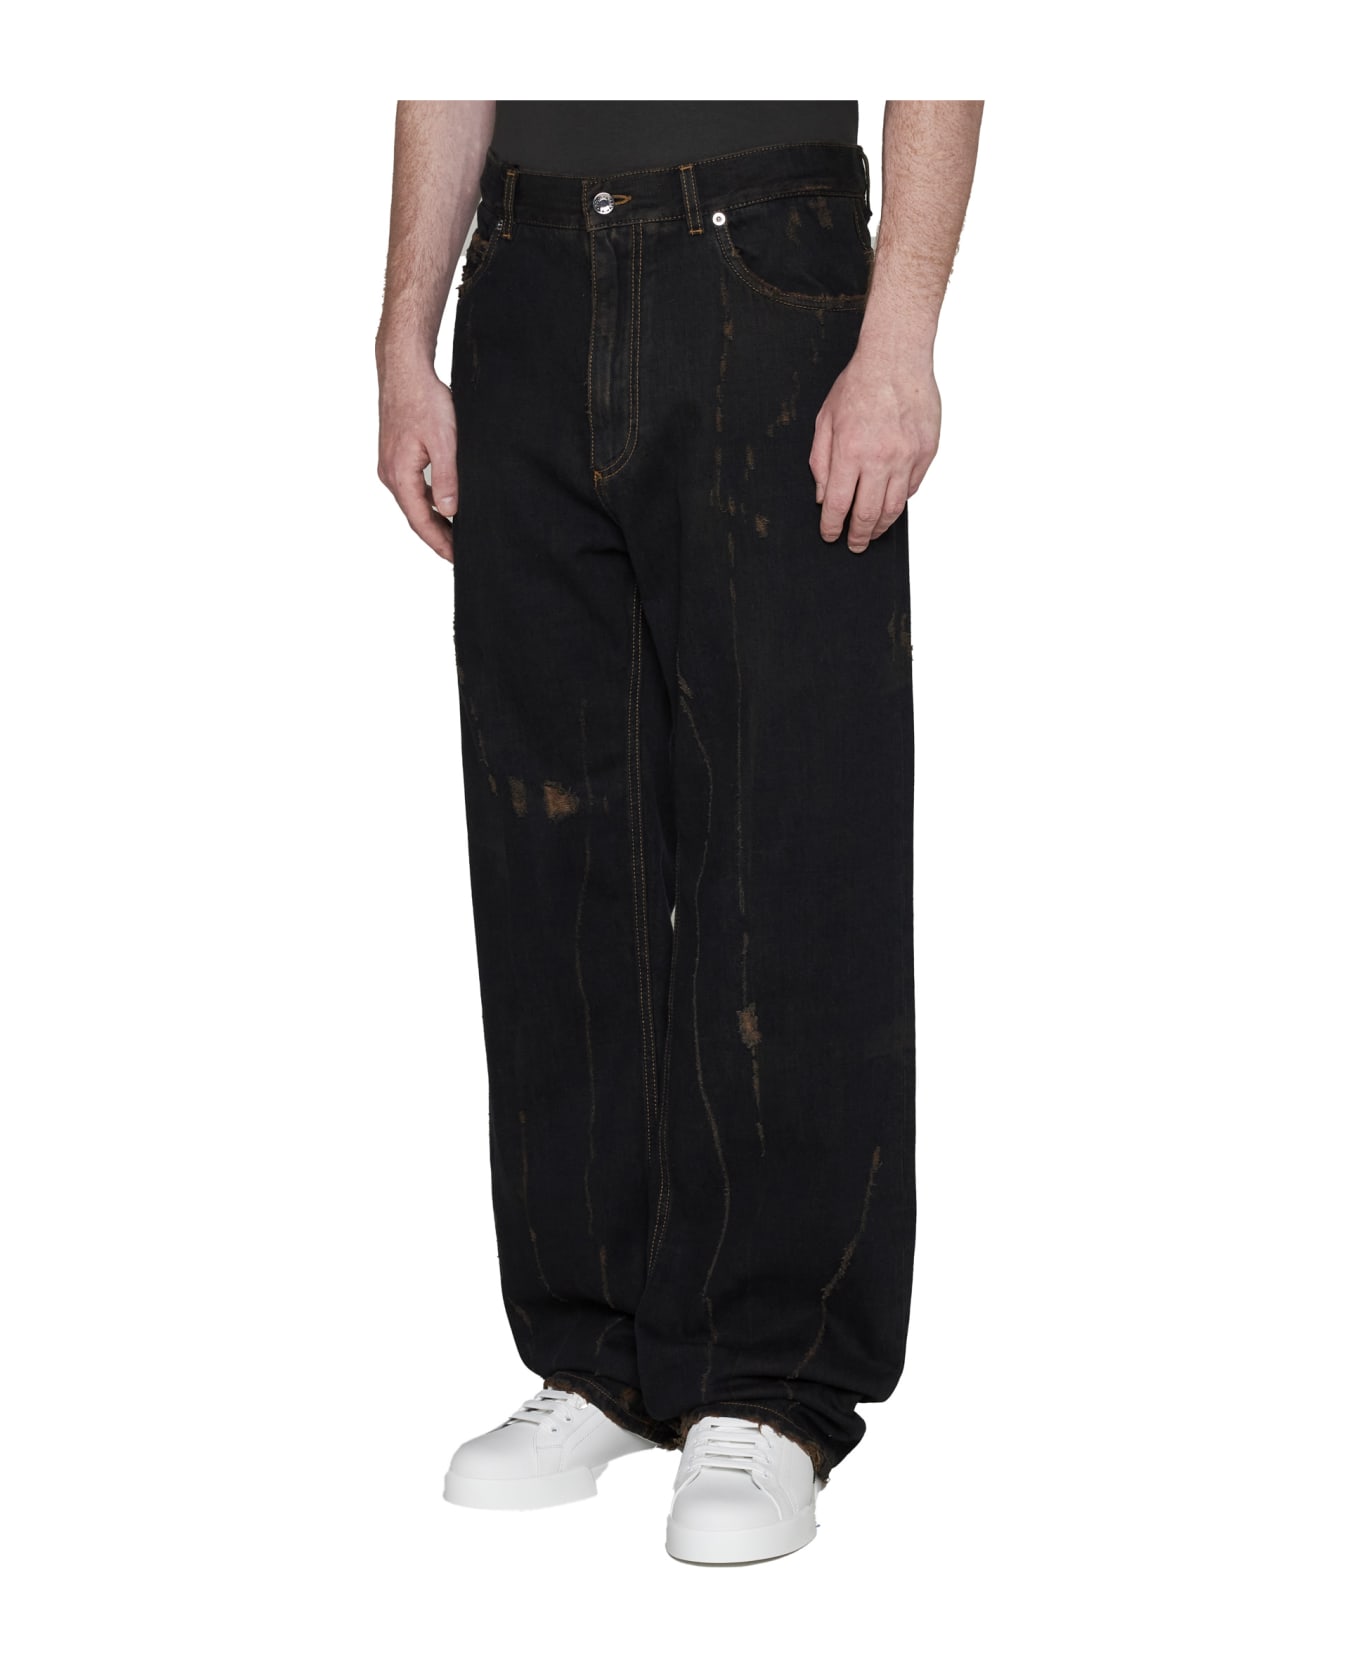 Dolce & Gabbana Denim Pants - Variante abbinata